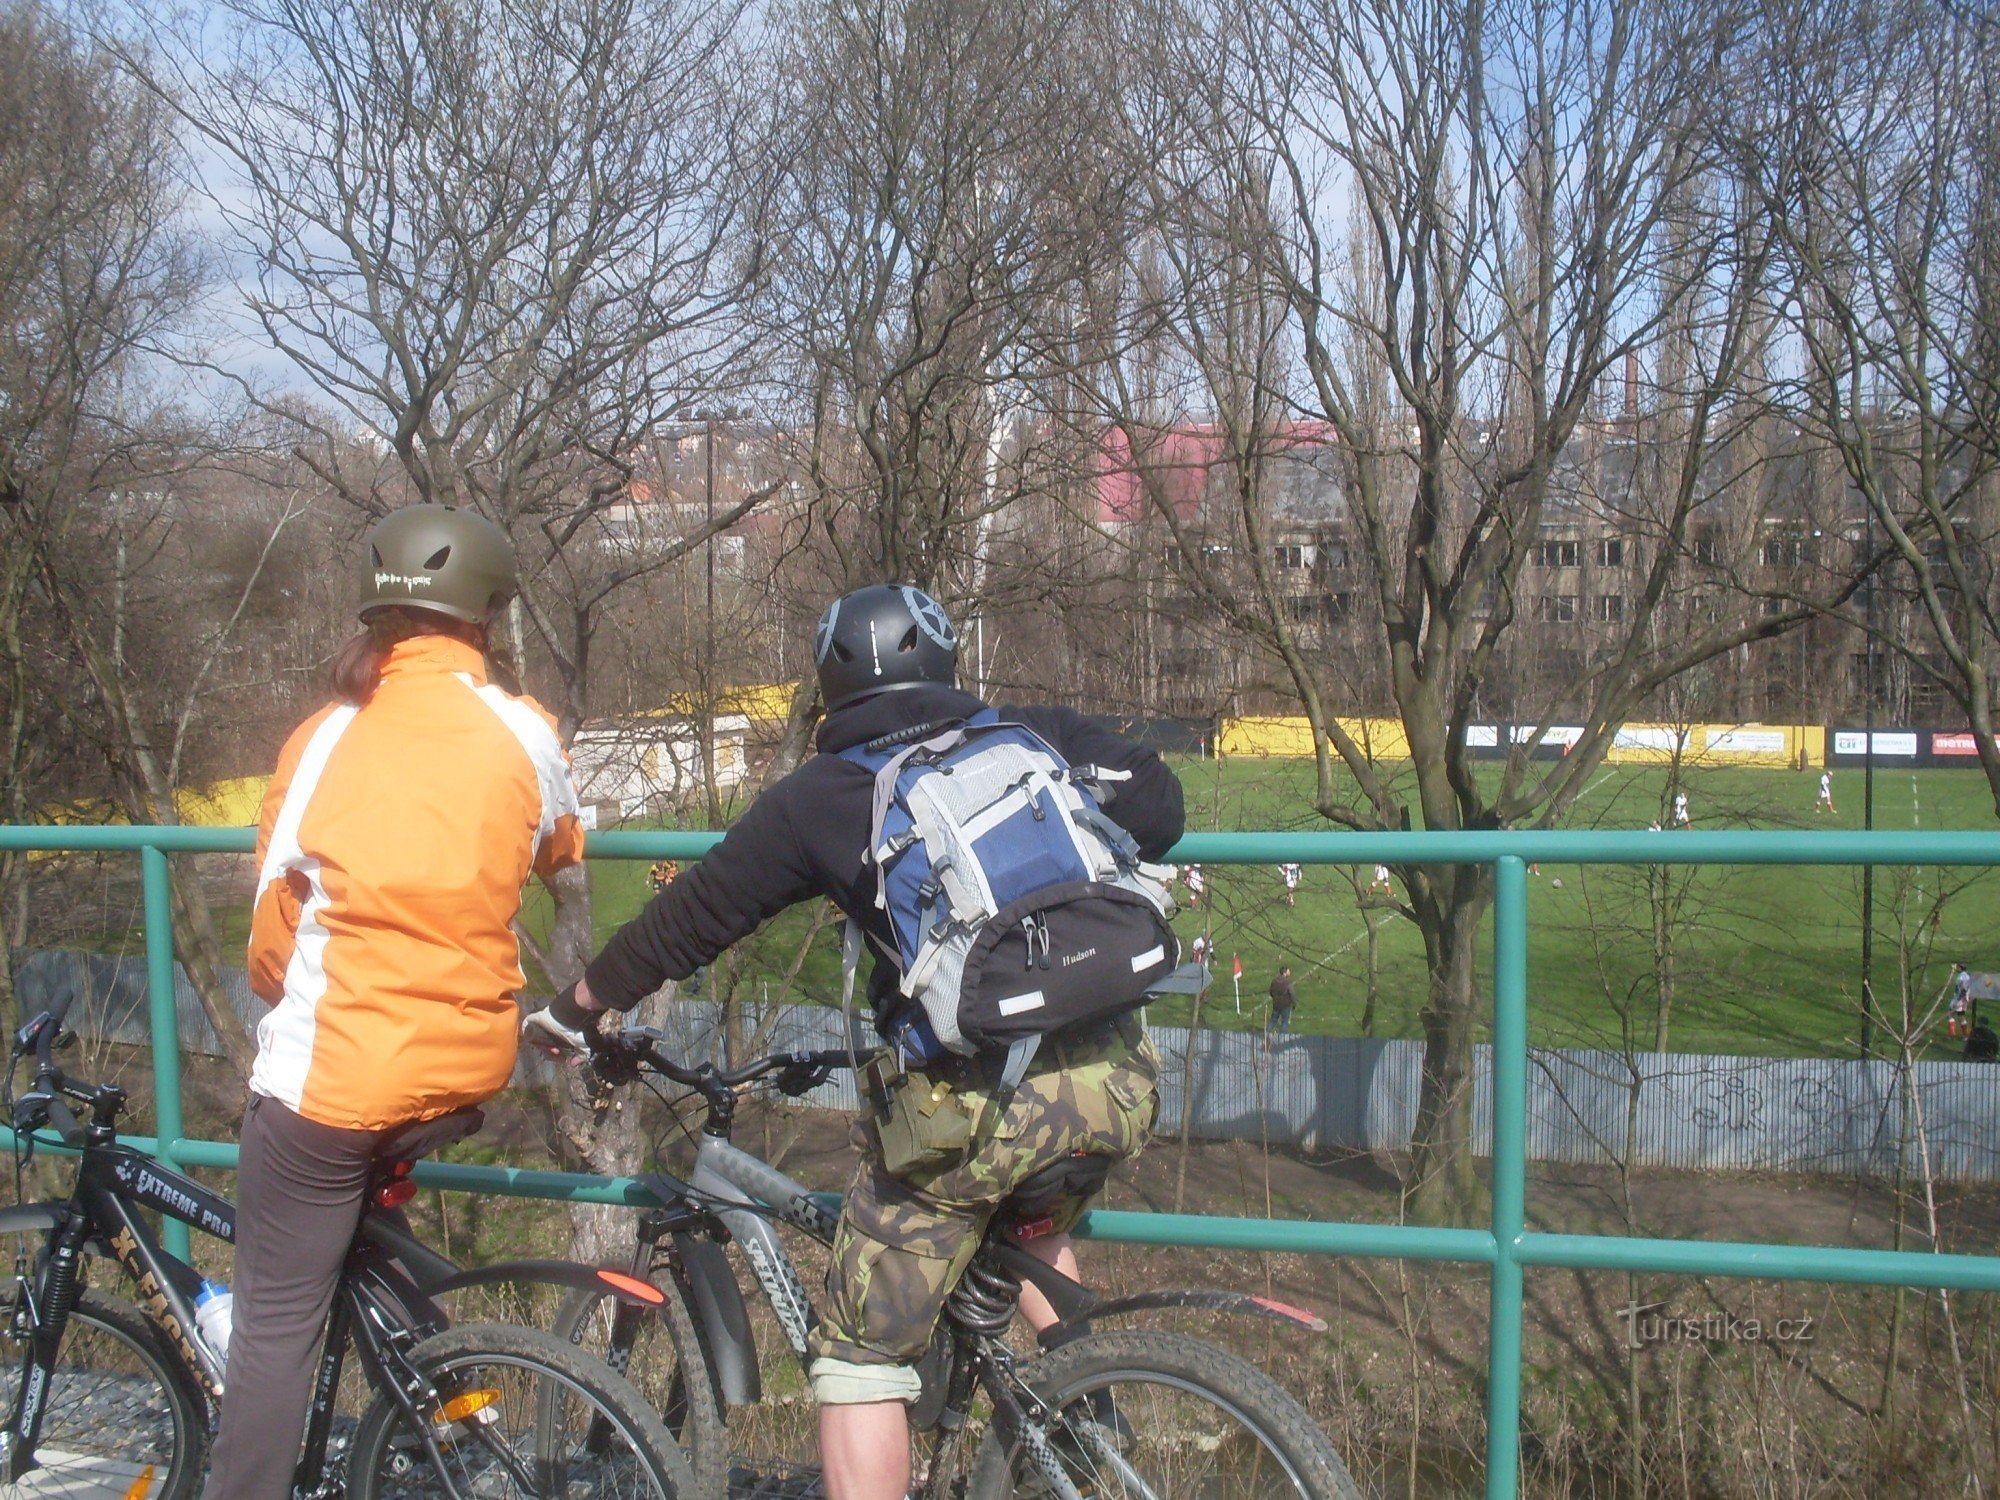 Je kunt de wedstrijd ook bekijken met een squishy bal vanaf het fietspad dat langs de oude spoorlijn loopt